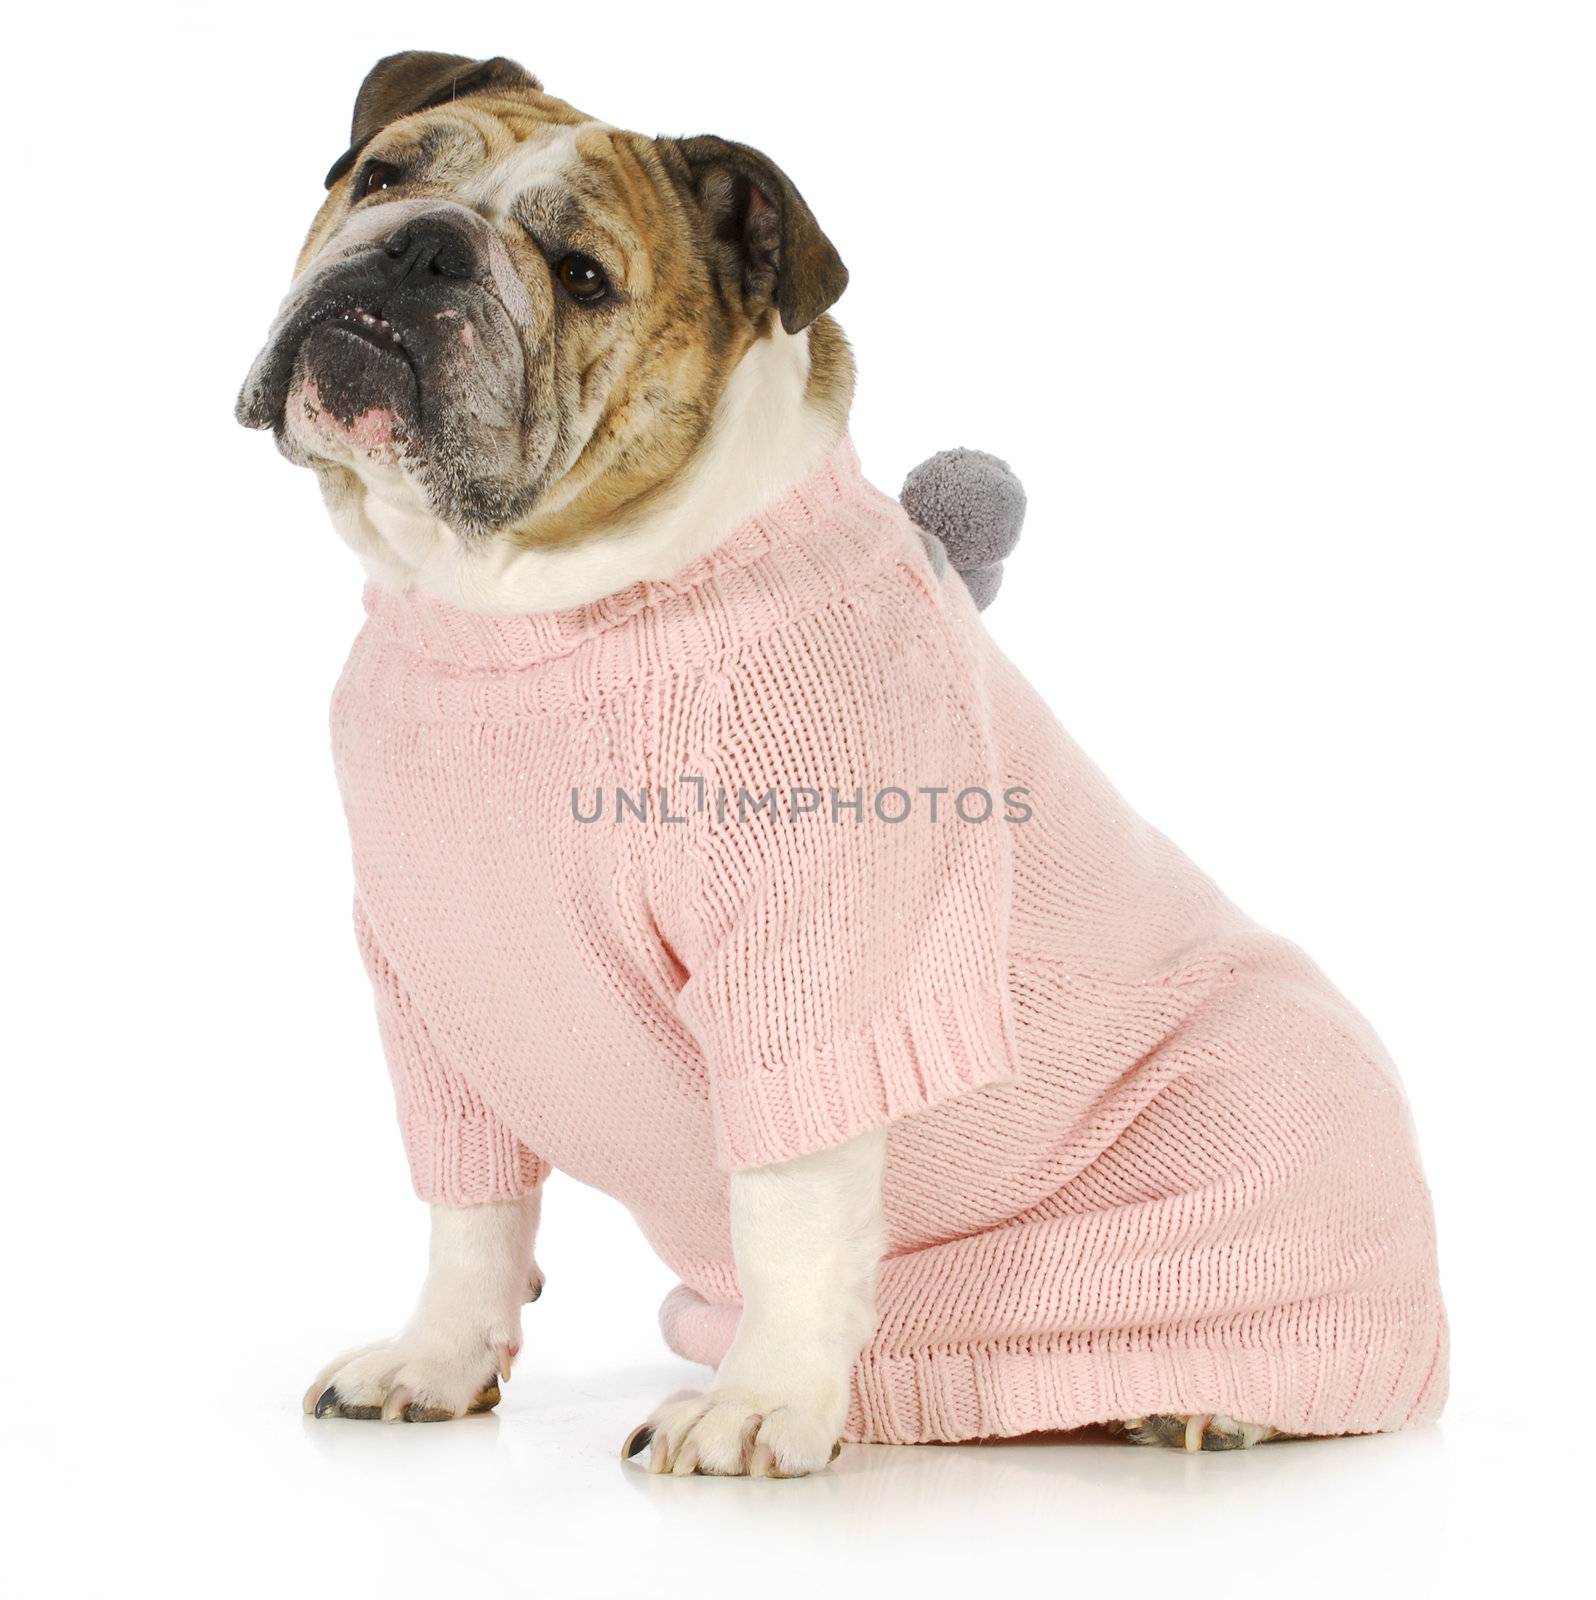 dog wearing sweater - english bulldog wearing pink dog coat sitting on white background